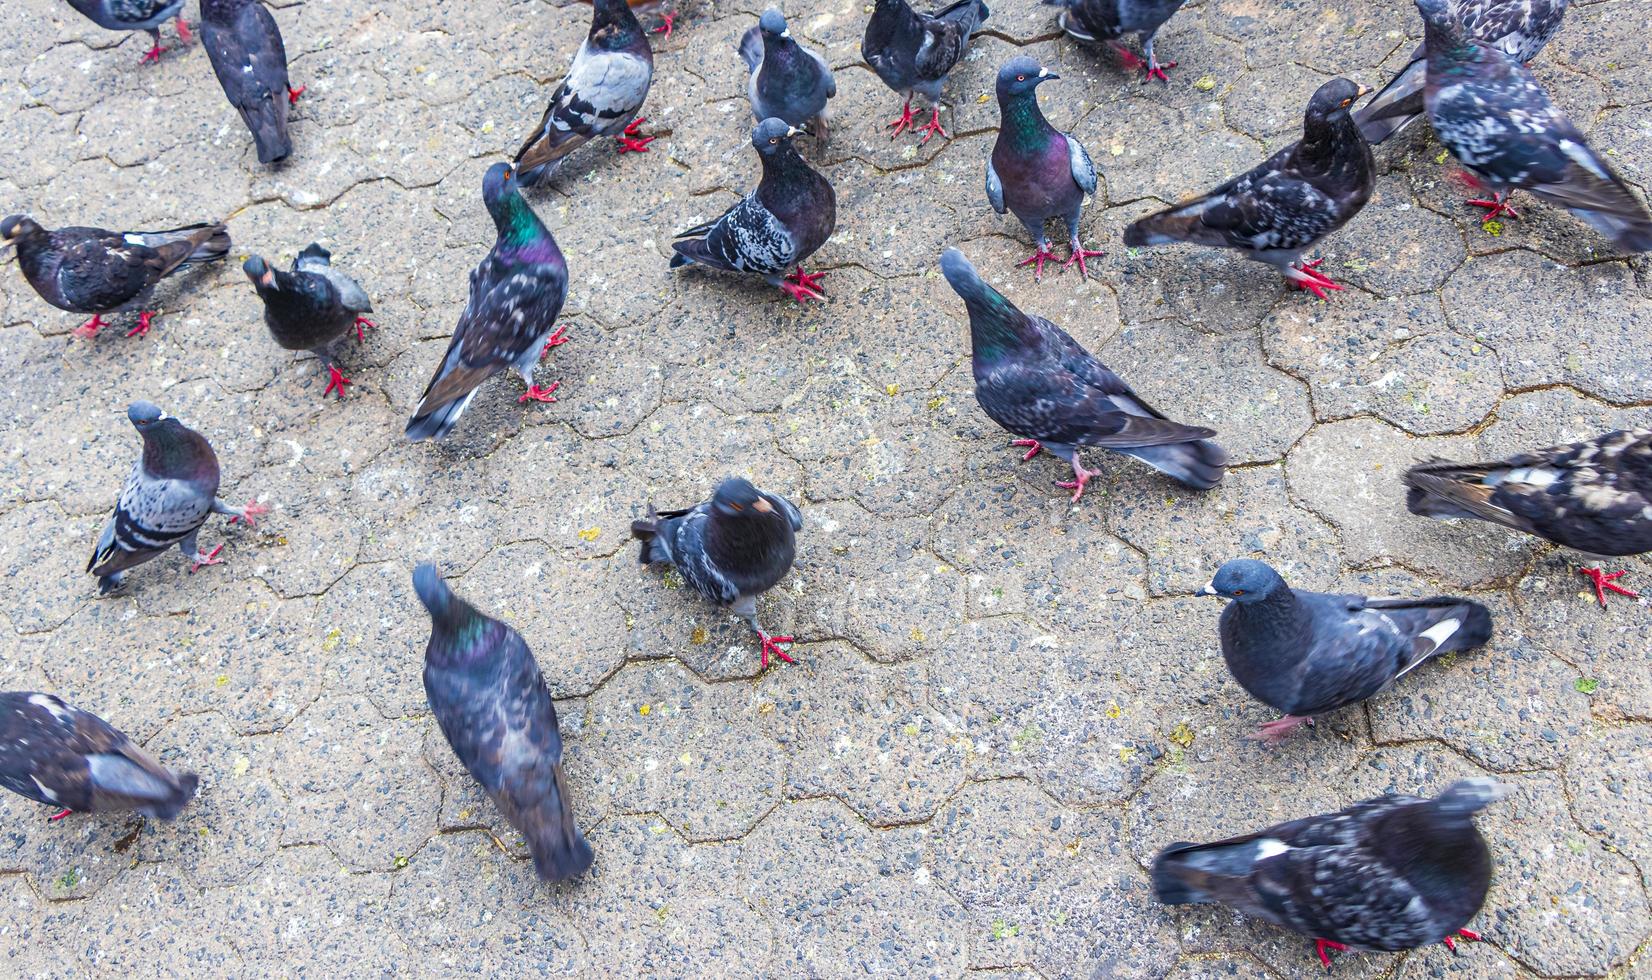 viele Taubenvögel in der Stadt Plaza San Jose Costa Rica. foto